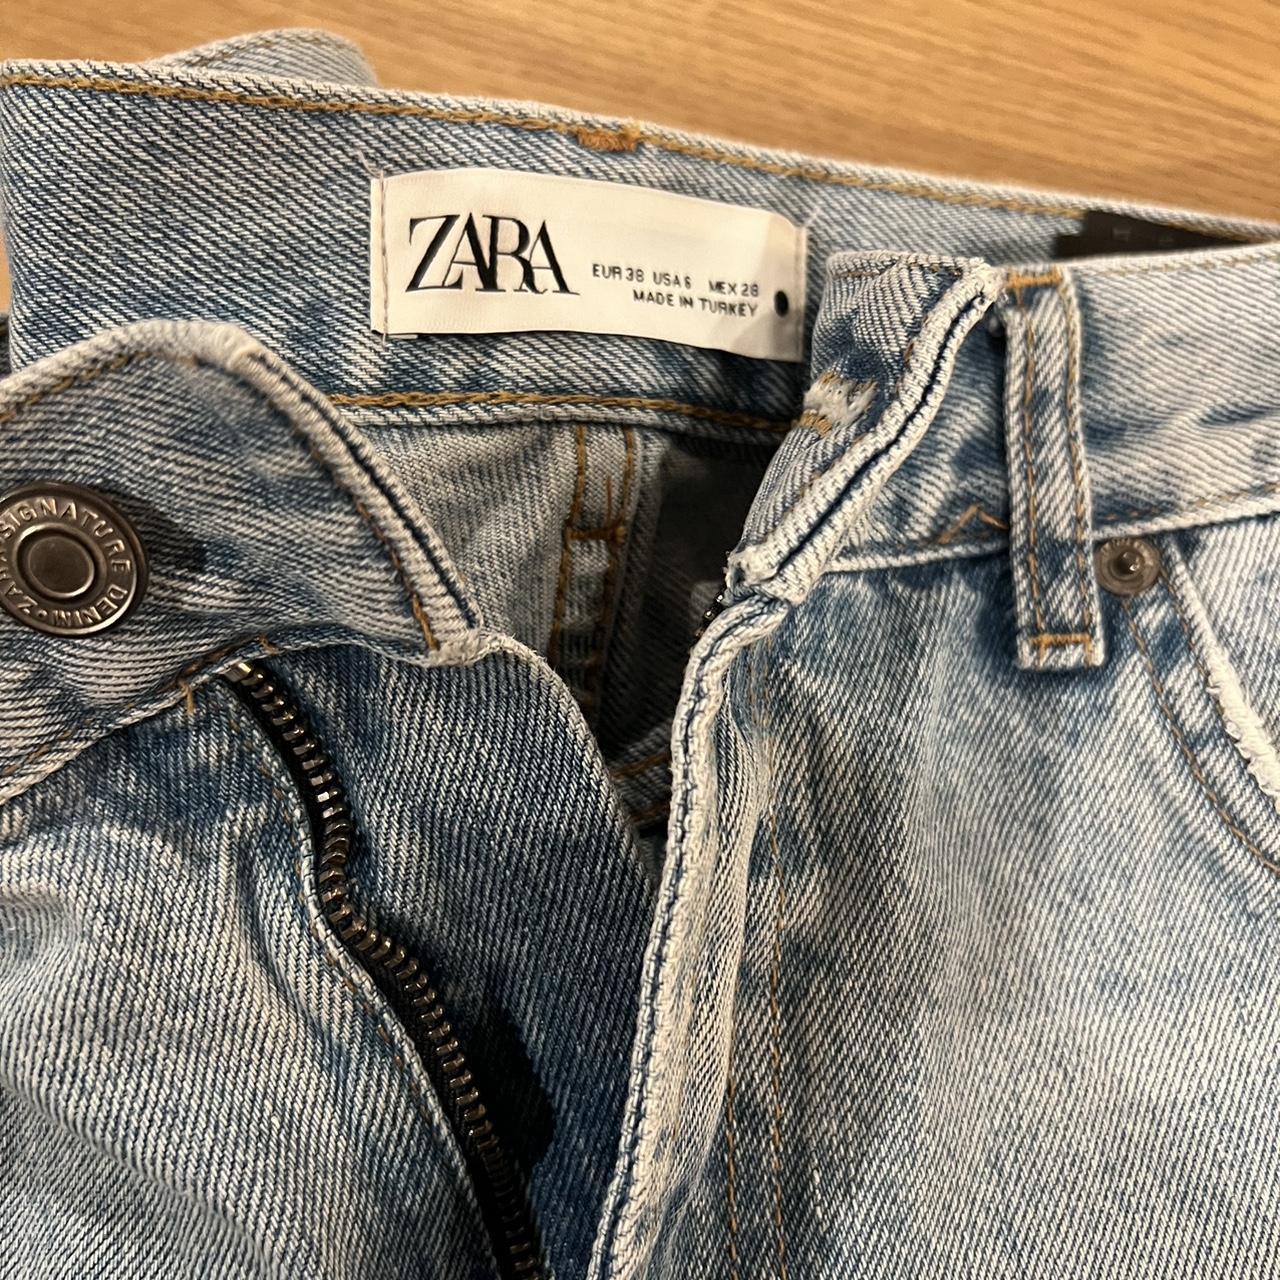 Zara Women's Blue Jeans